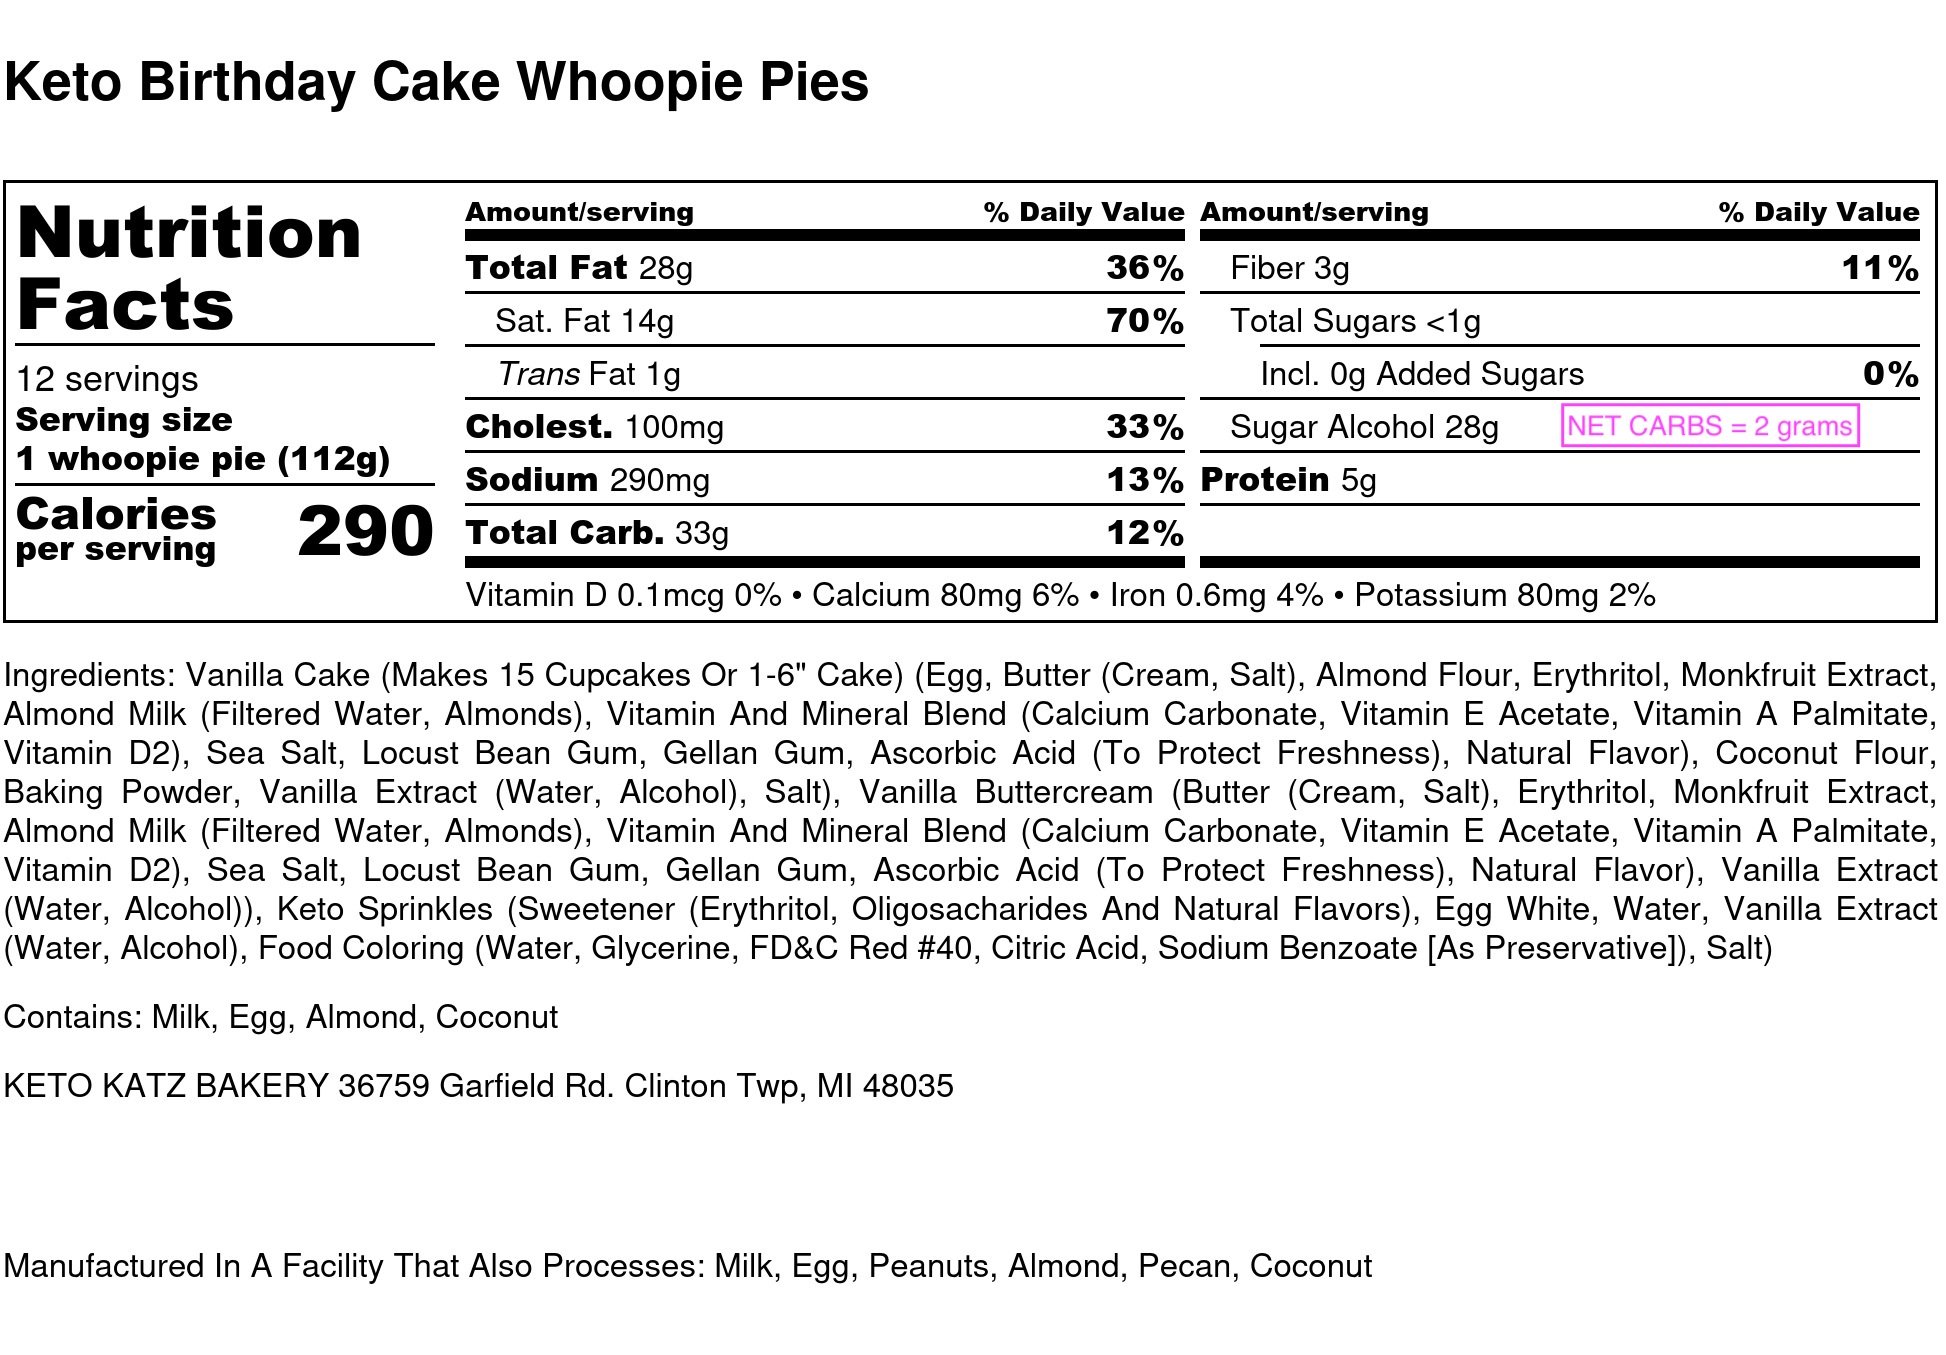 Keto Birthday Cake Whoopie Pies - Nutrition Label.jpg